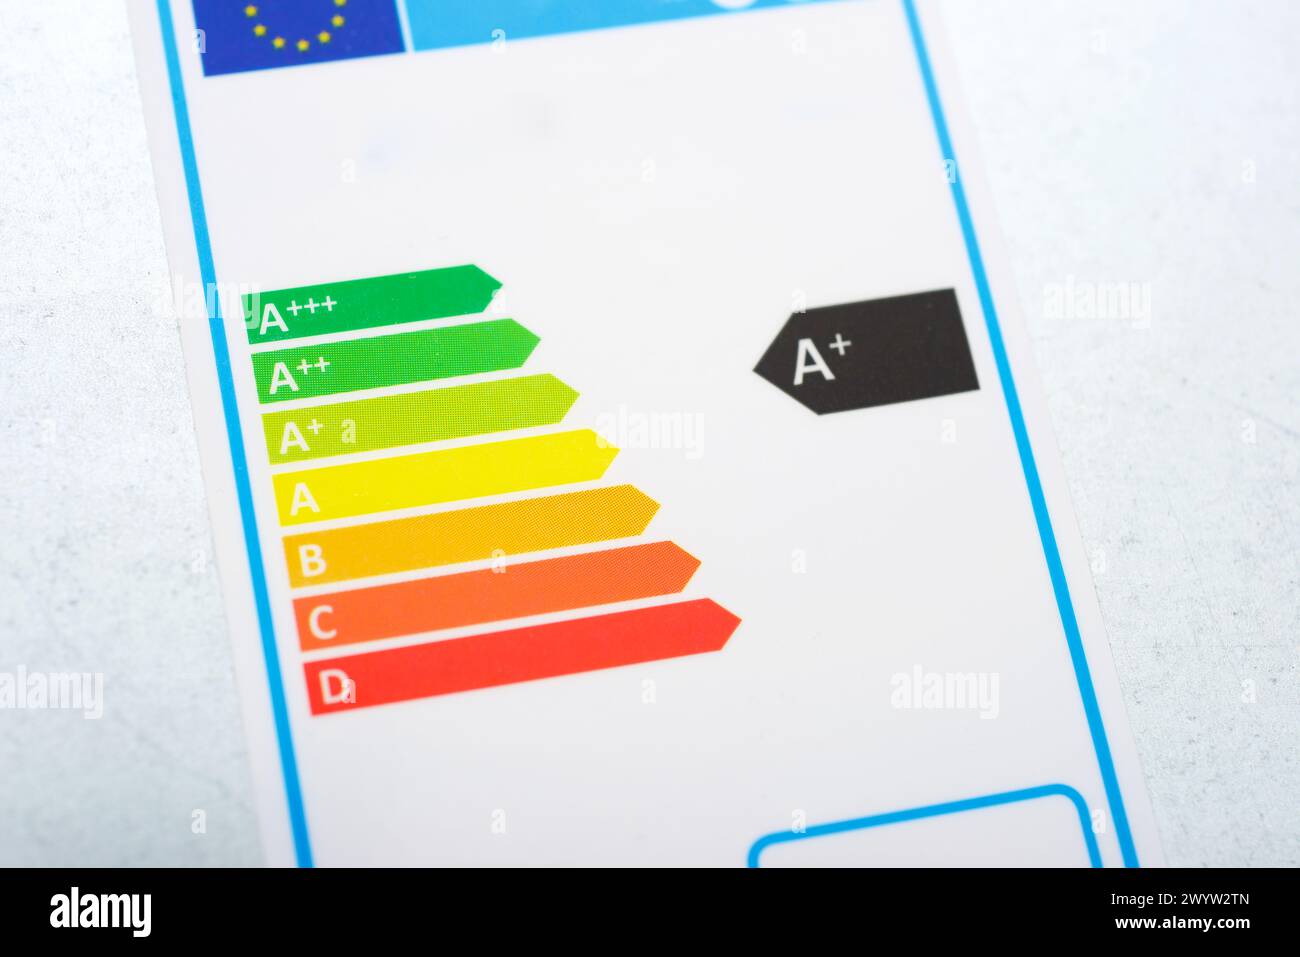 Primo piano dell'etichetta UE che indica l'efficienza energetica di un apparecchio domestico Foto Stock